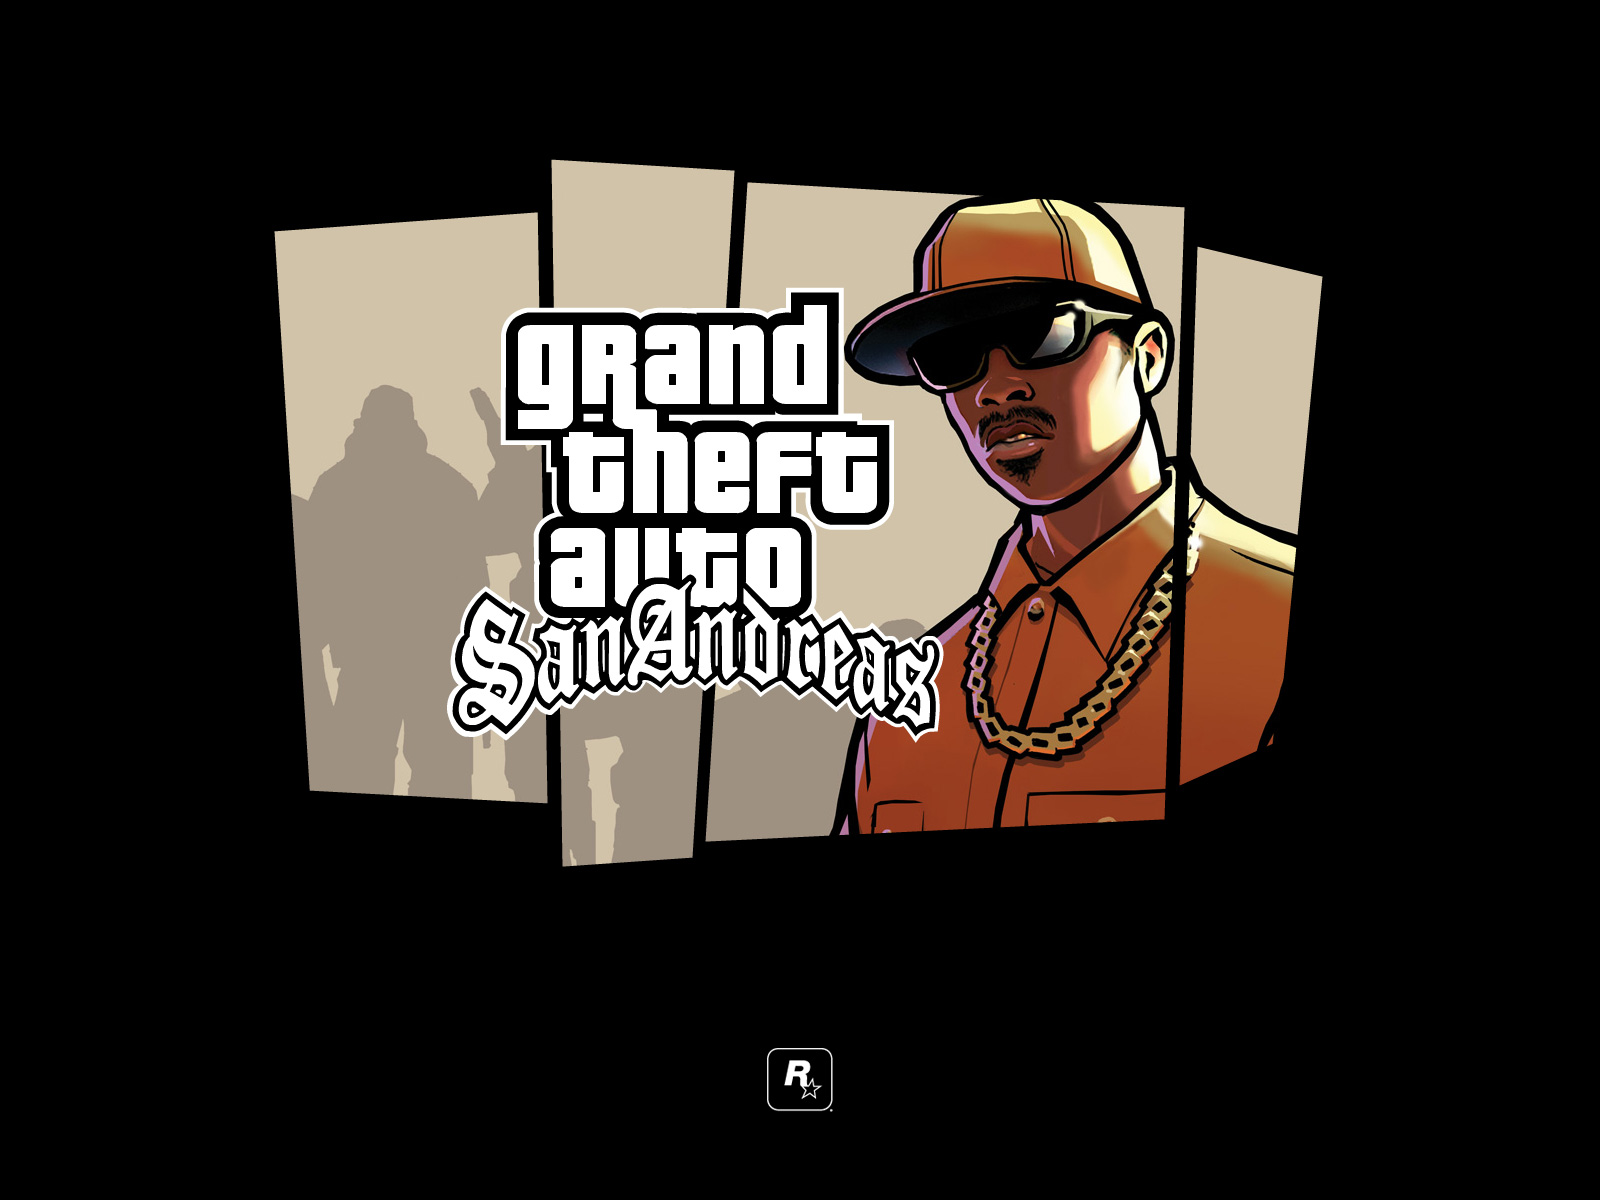 Fond Ecran Wallpaper Grand Theft Auto San Andreas Jeuxvideo Fr